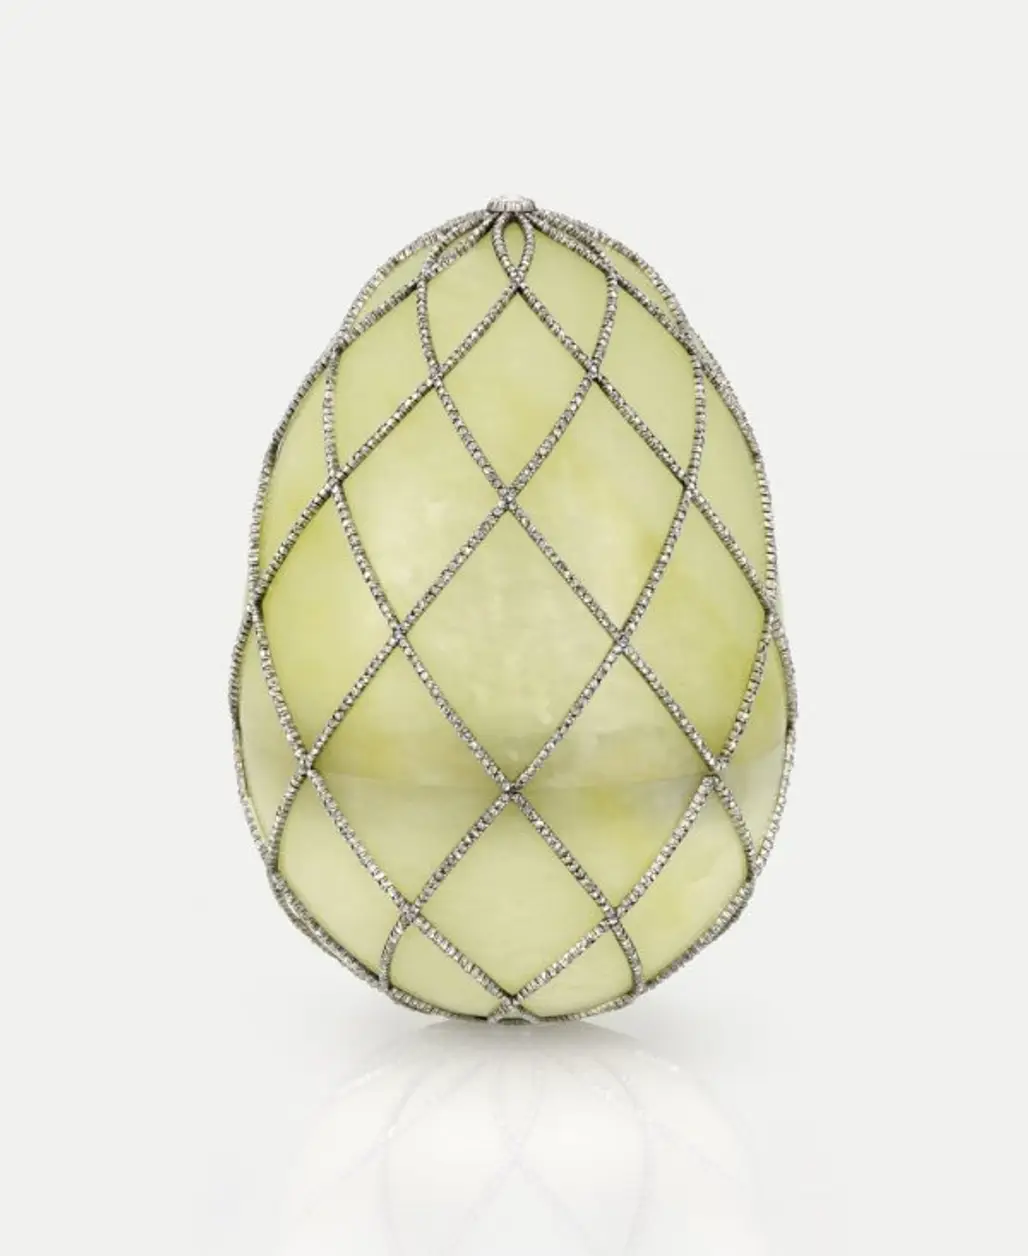 The Diamond Trellis Egg